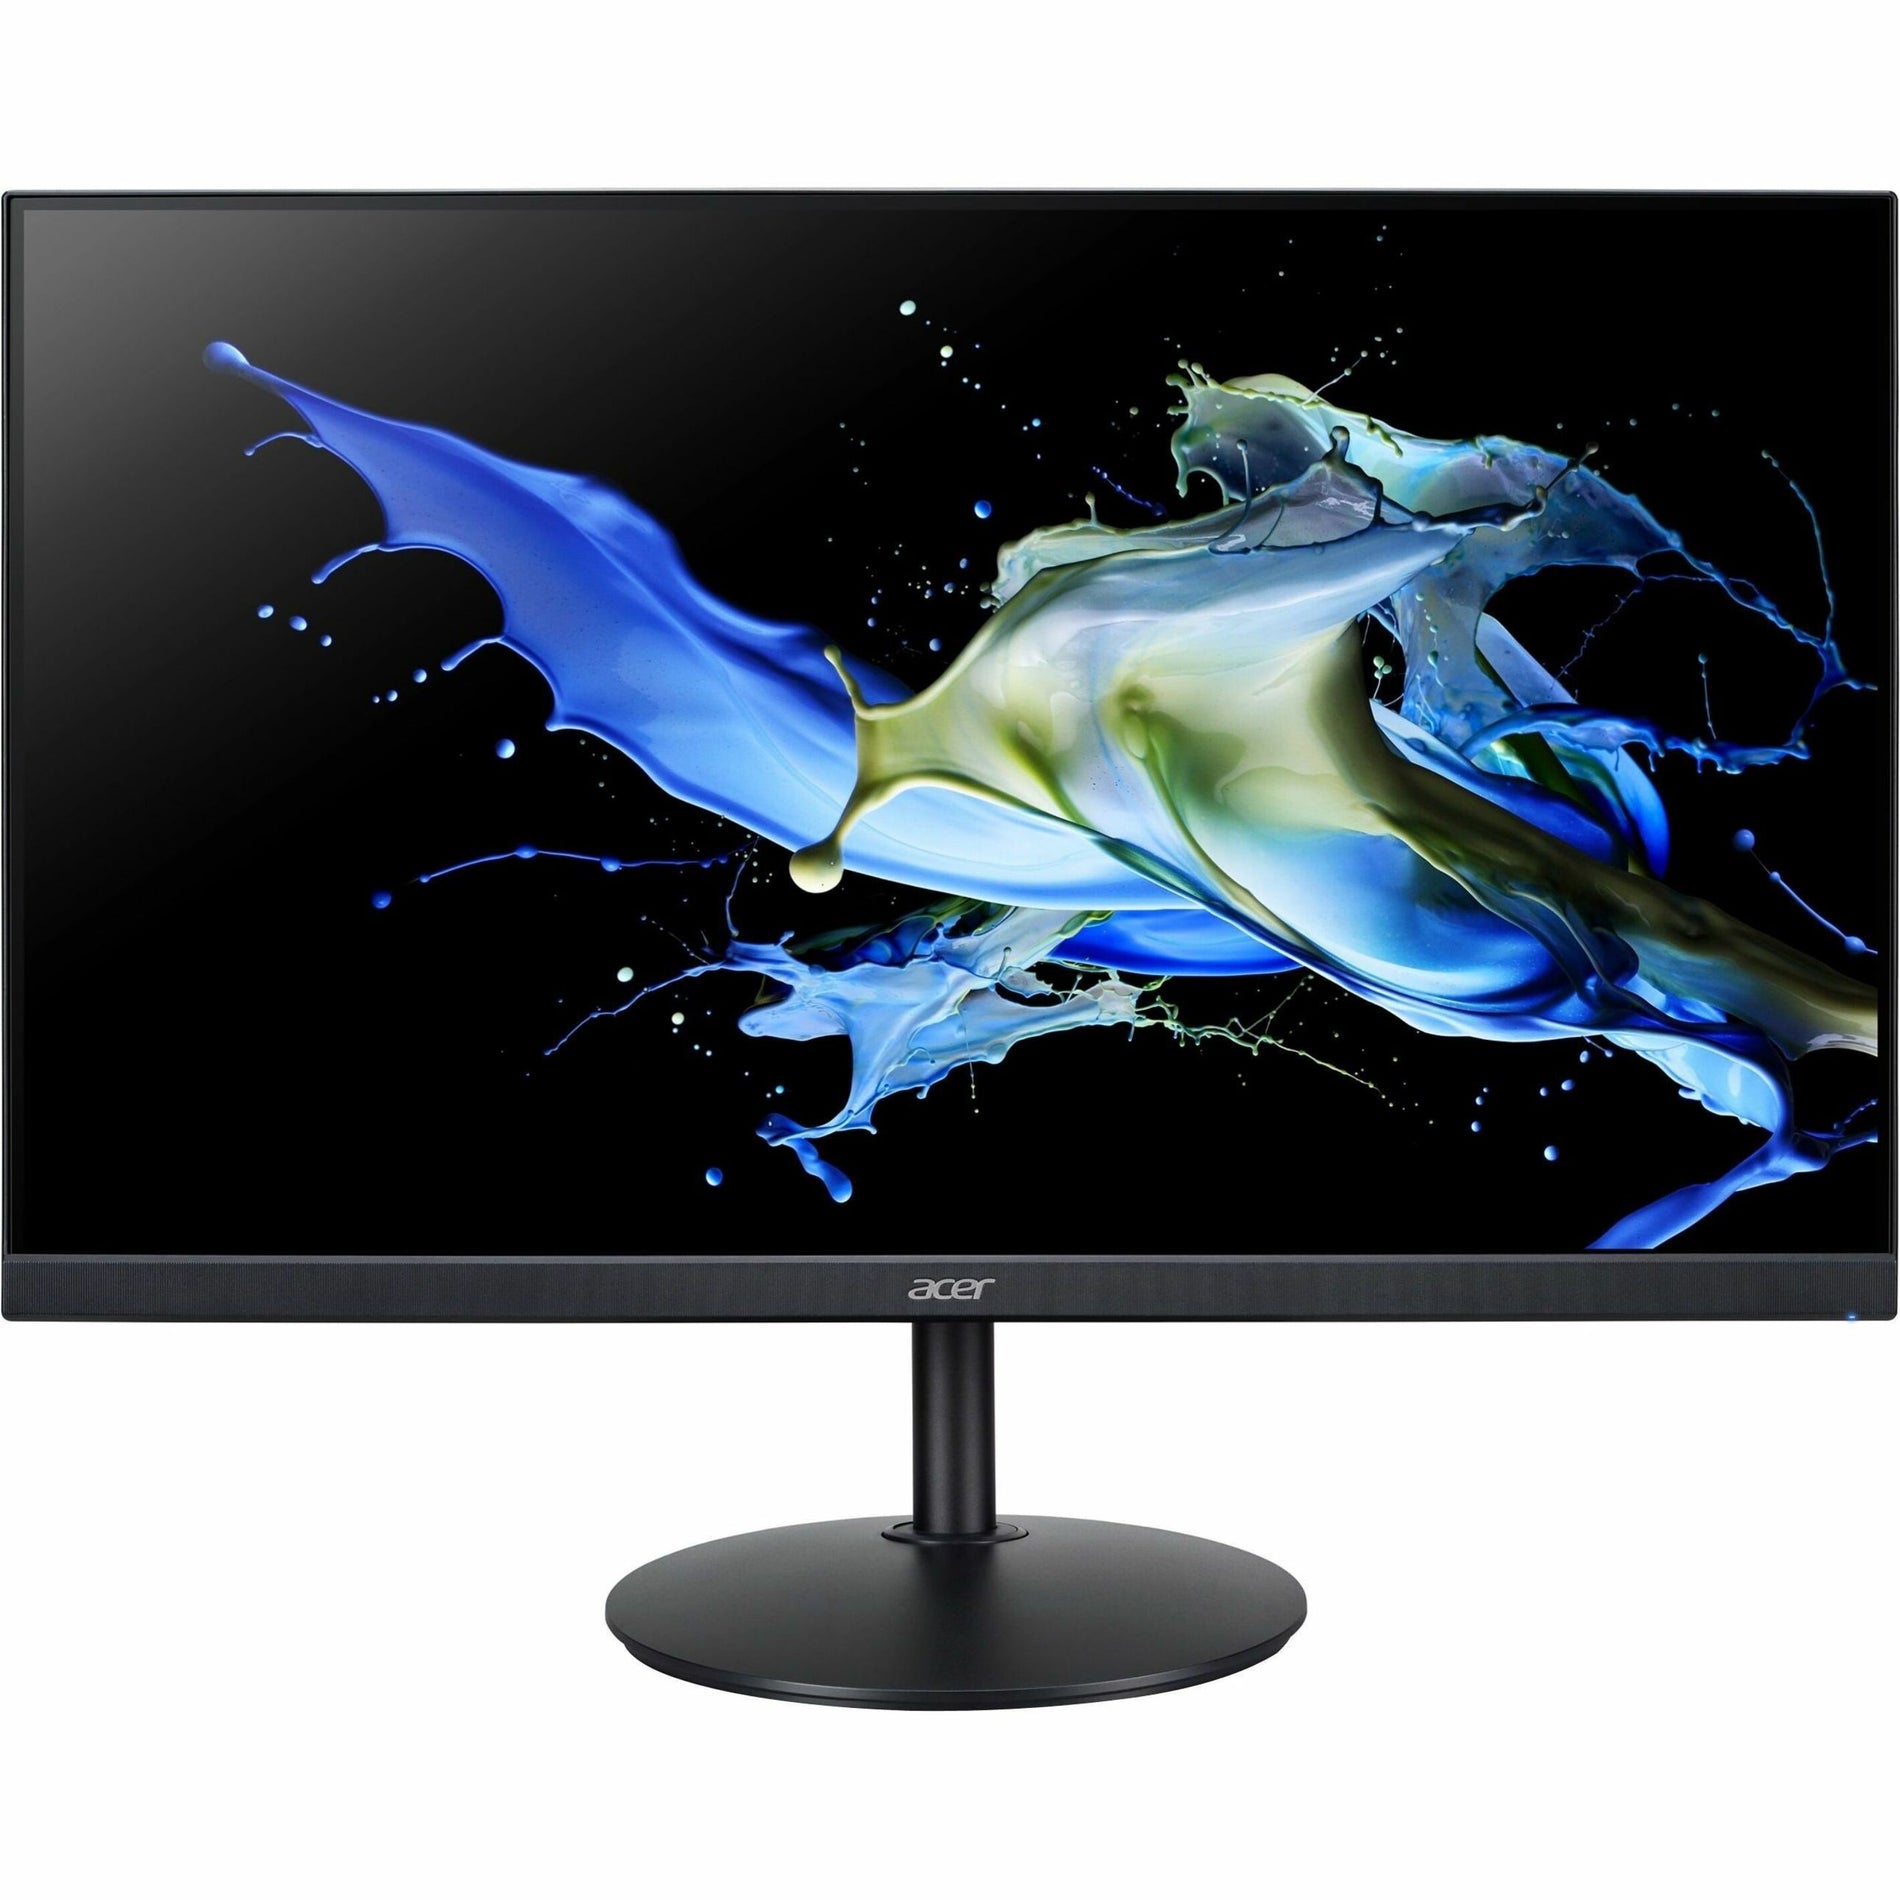 Acer UM.HB2AA.E01 CB272 E 27" Full HD LED Monitor, 16:9, Black - 99% sRGB, 1ms VRB Response Time